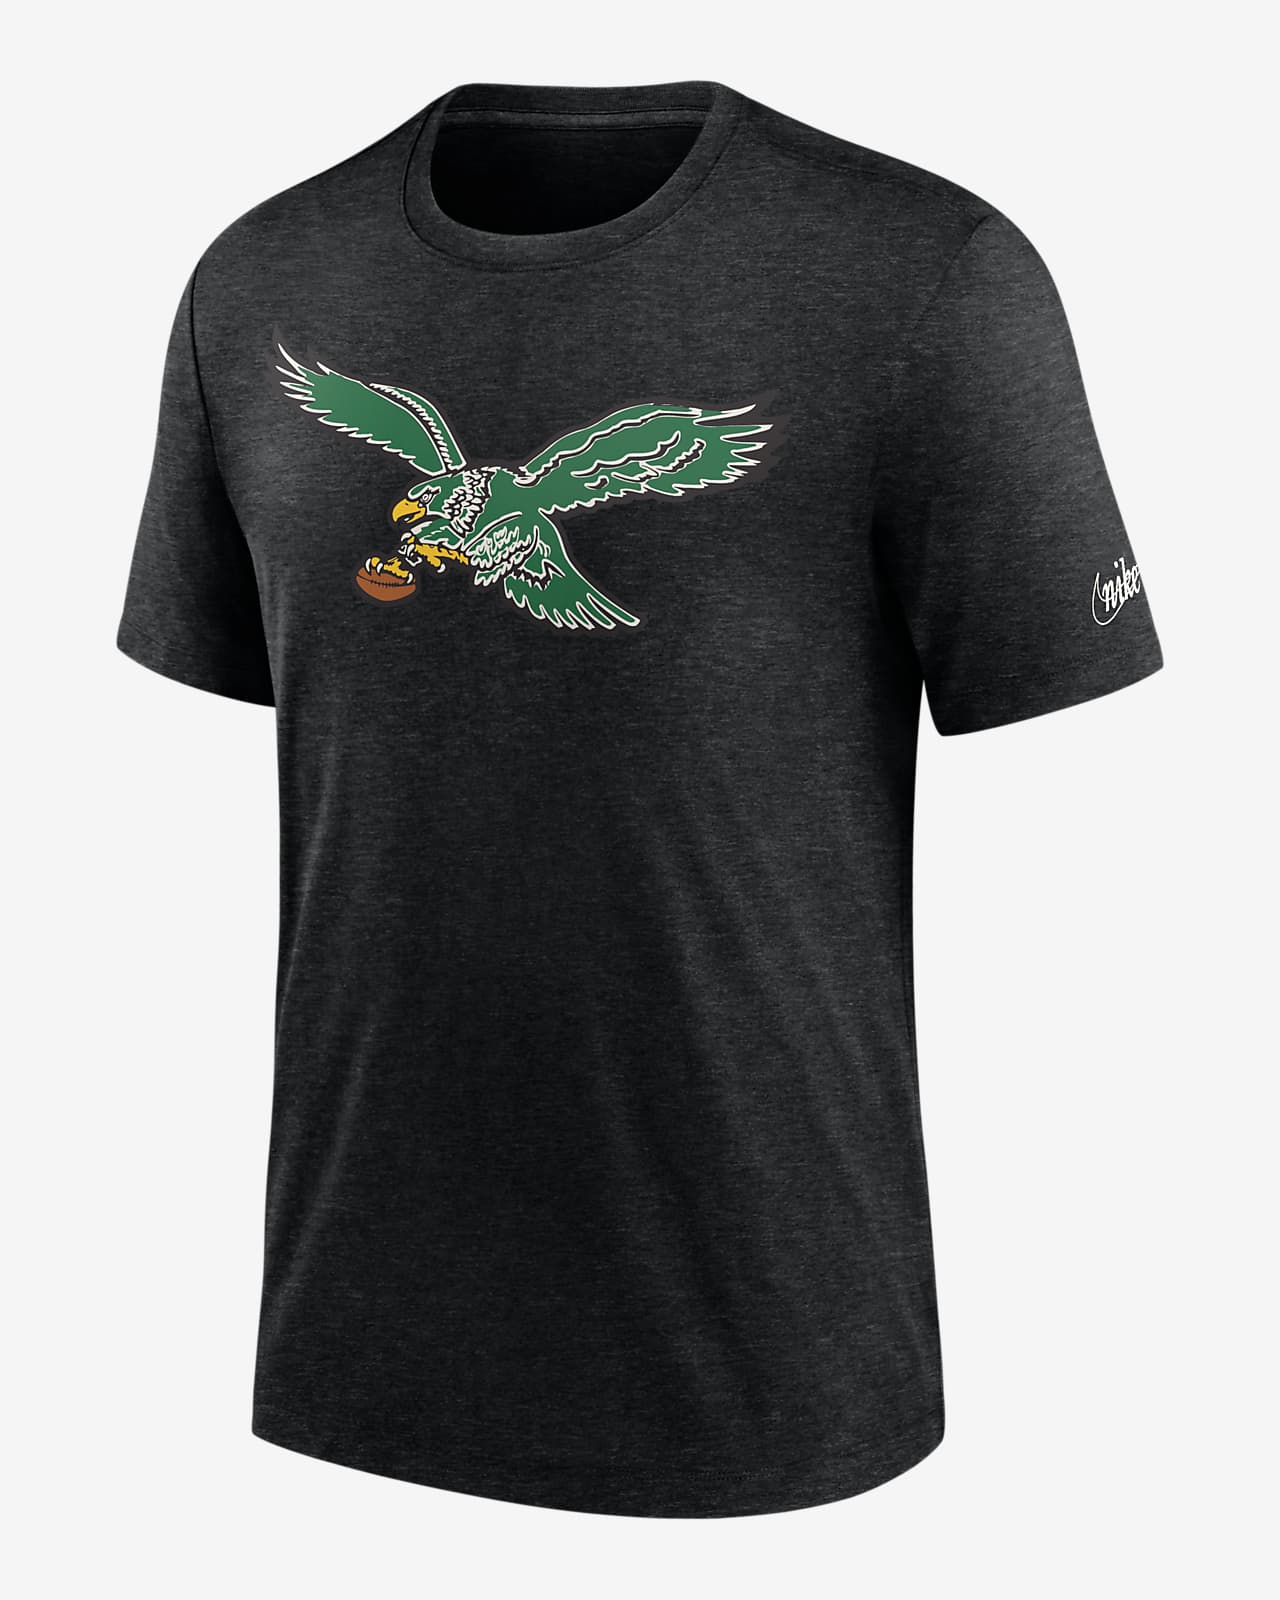 Nike (NFL Philadelphia Eagles) Men's T-Shirt.